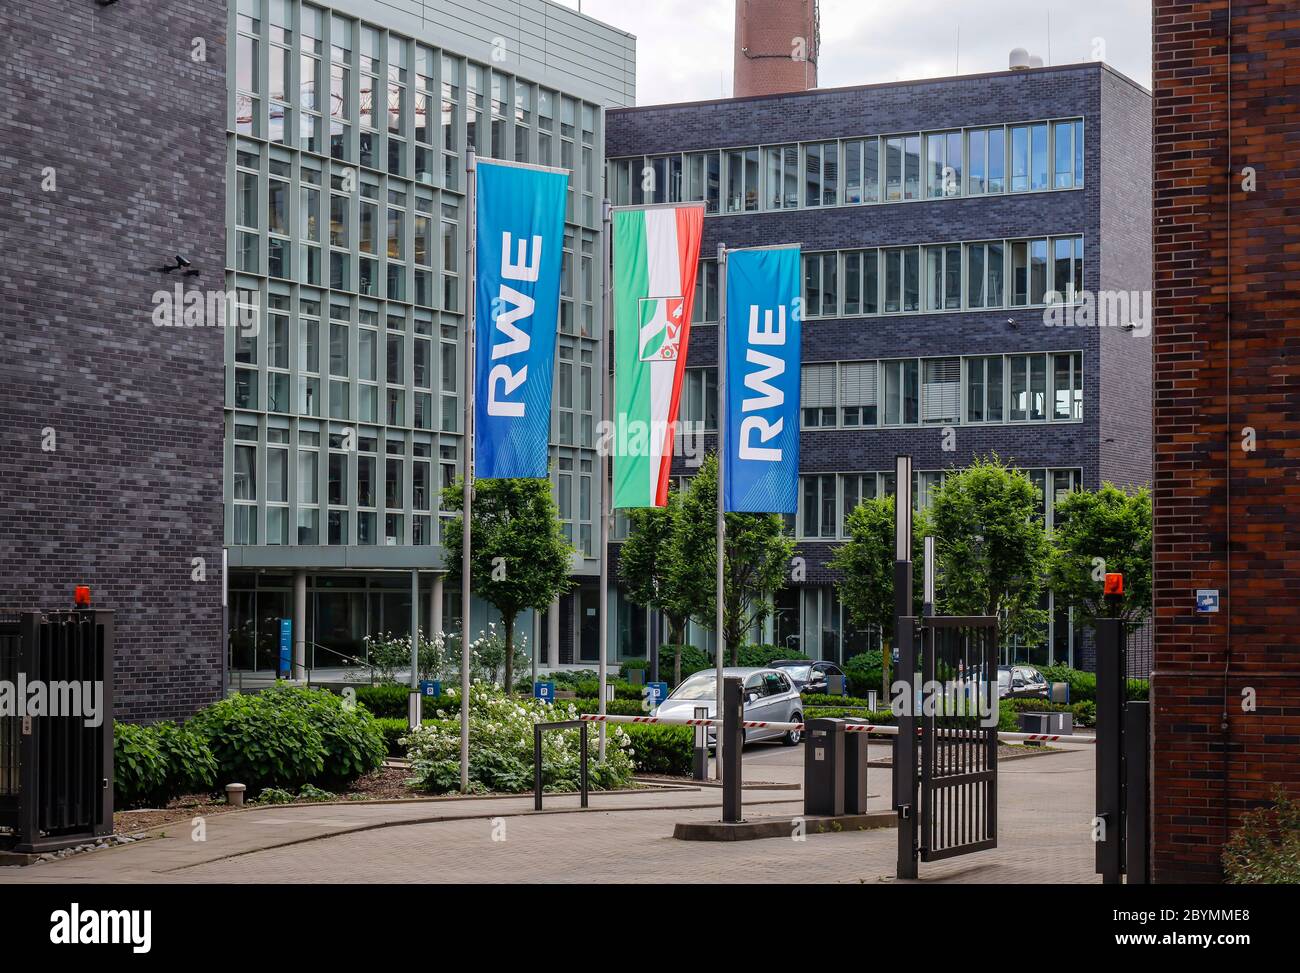 25.05.2020, Essen, North Rhine-Westphalia, Germany - RWE head office, new campus at the new RWE Platz on Altenessener Strasse in the Altenessen distri Stock Photo